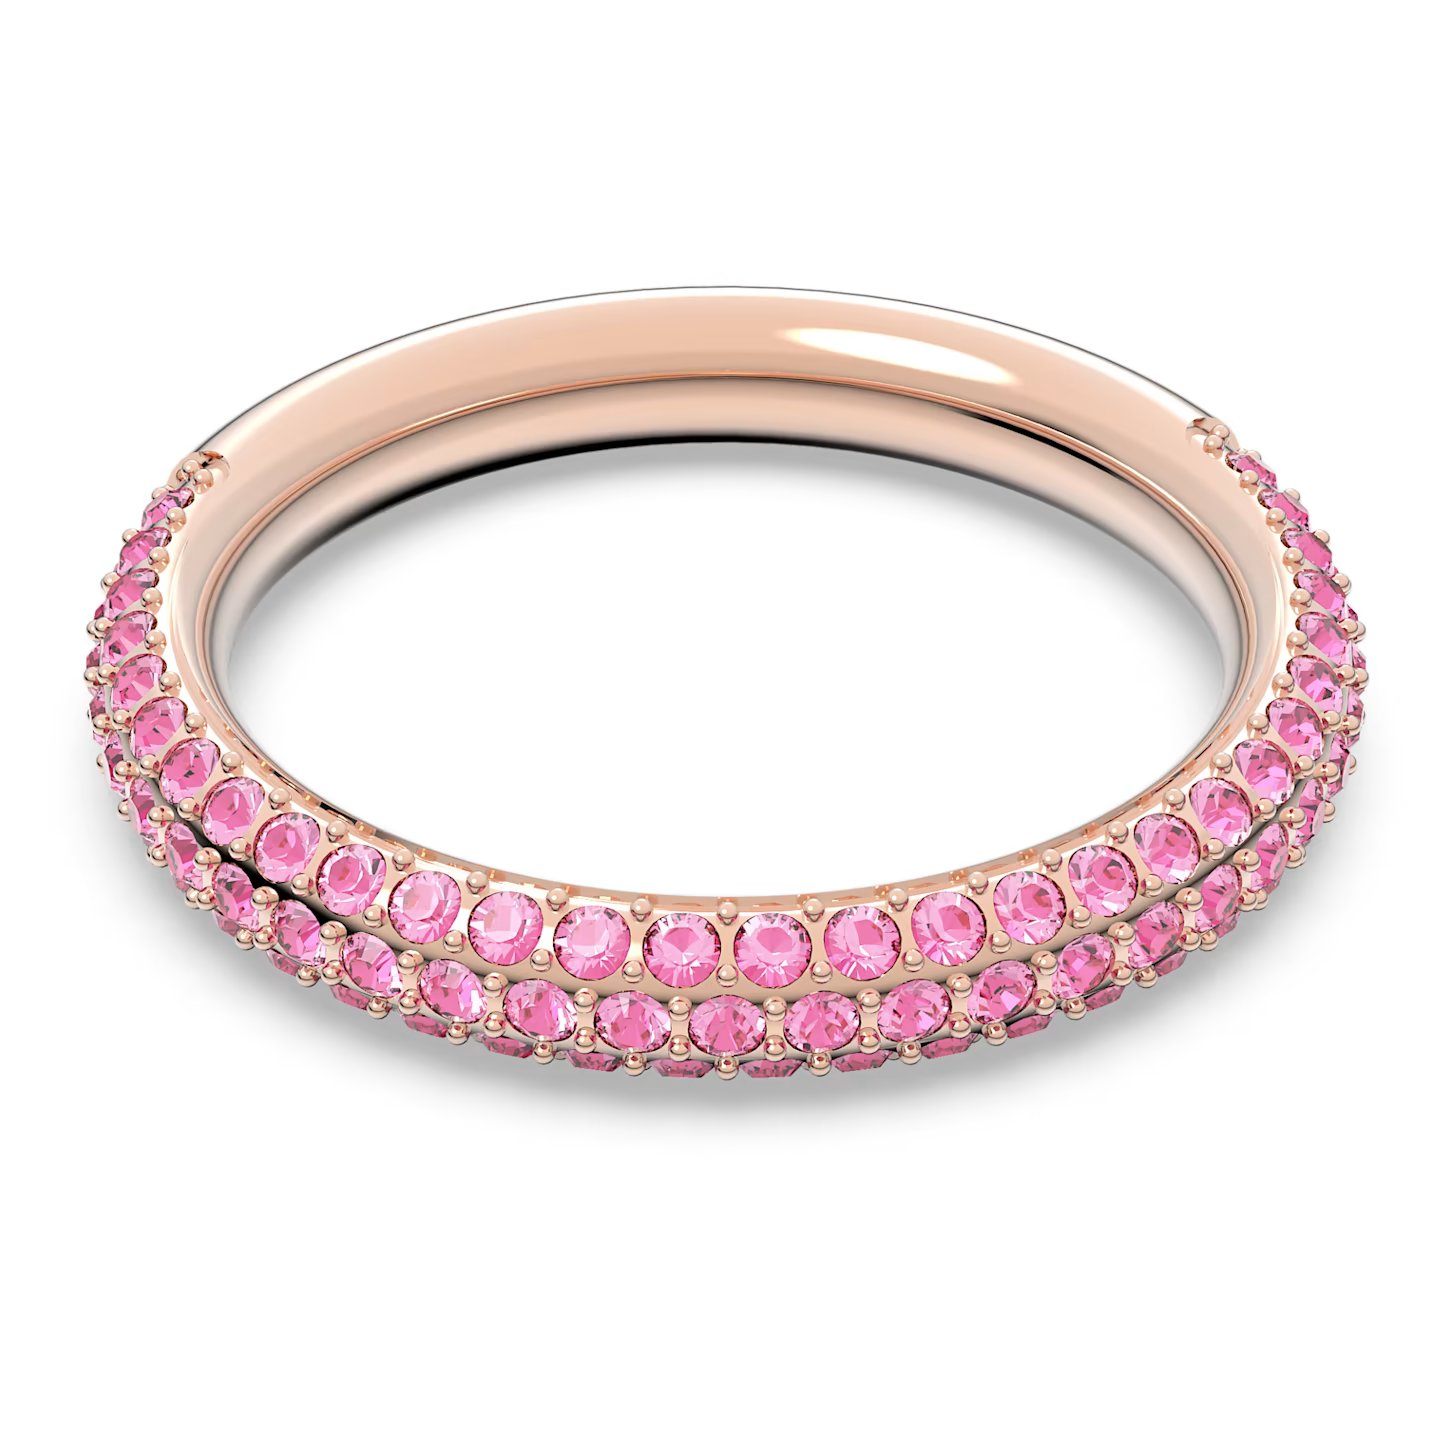 Swarovski Nádherný prsten s růžovými krystaly Swarovski Stone 5642910 58 mm